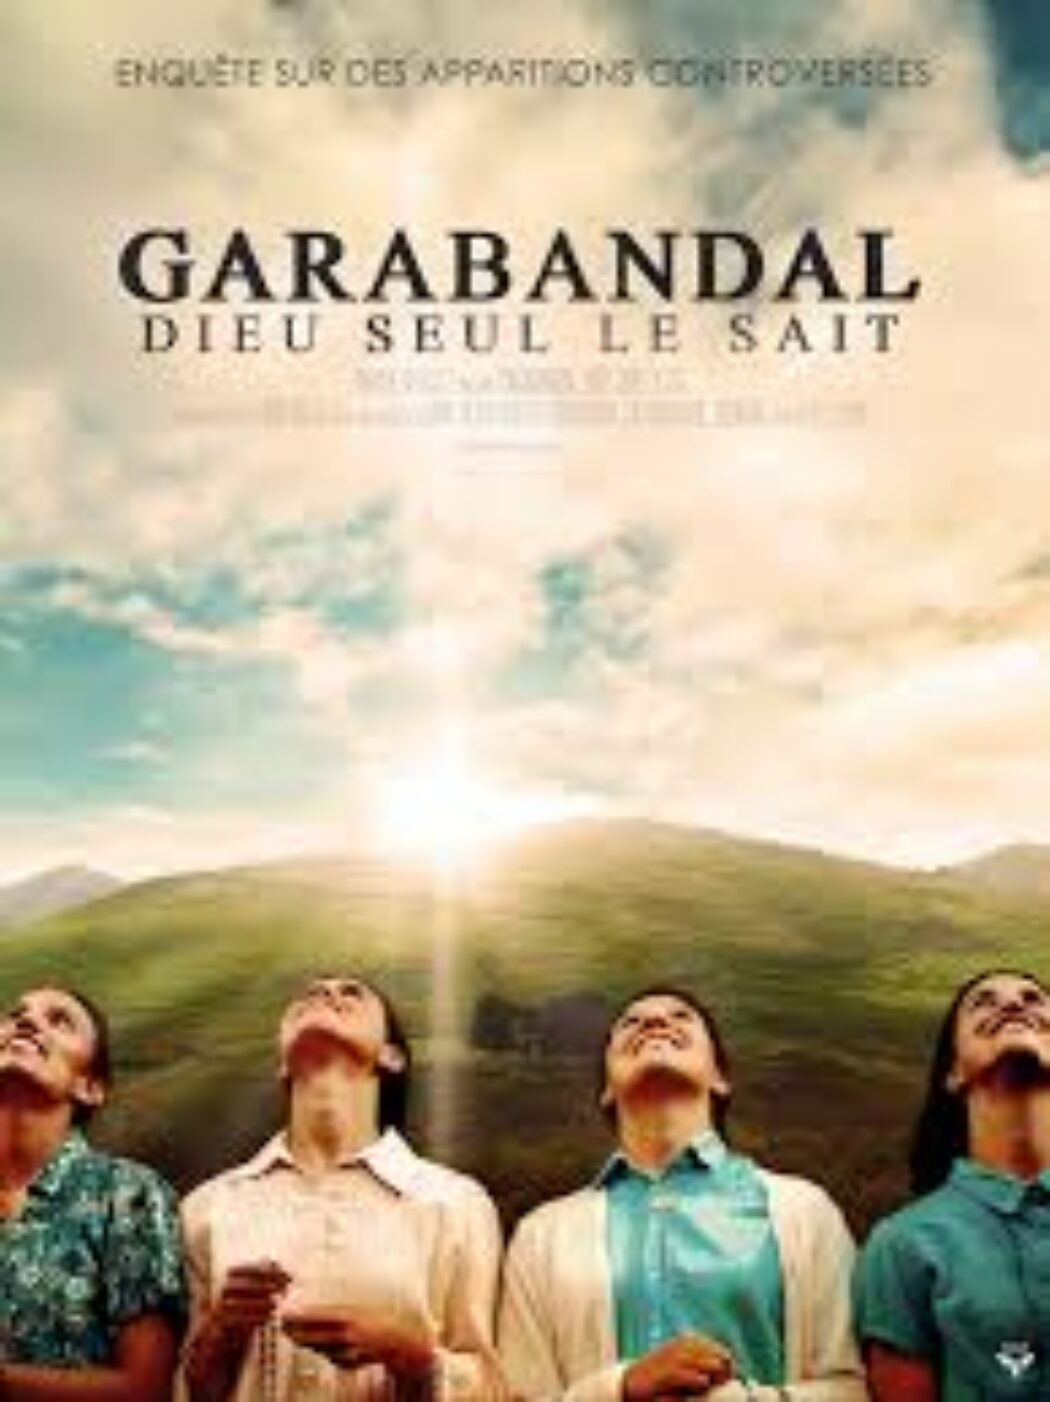 Garabandal: le débat sur les apparitions (1)